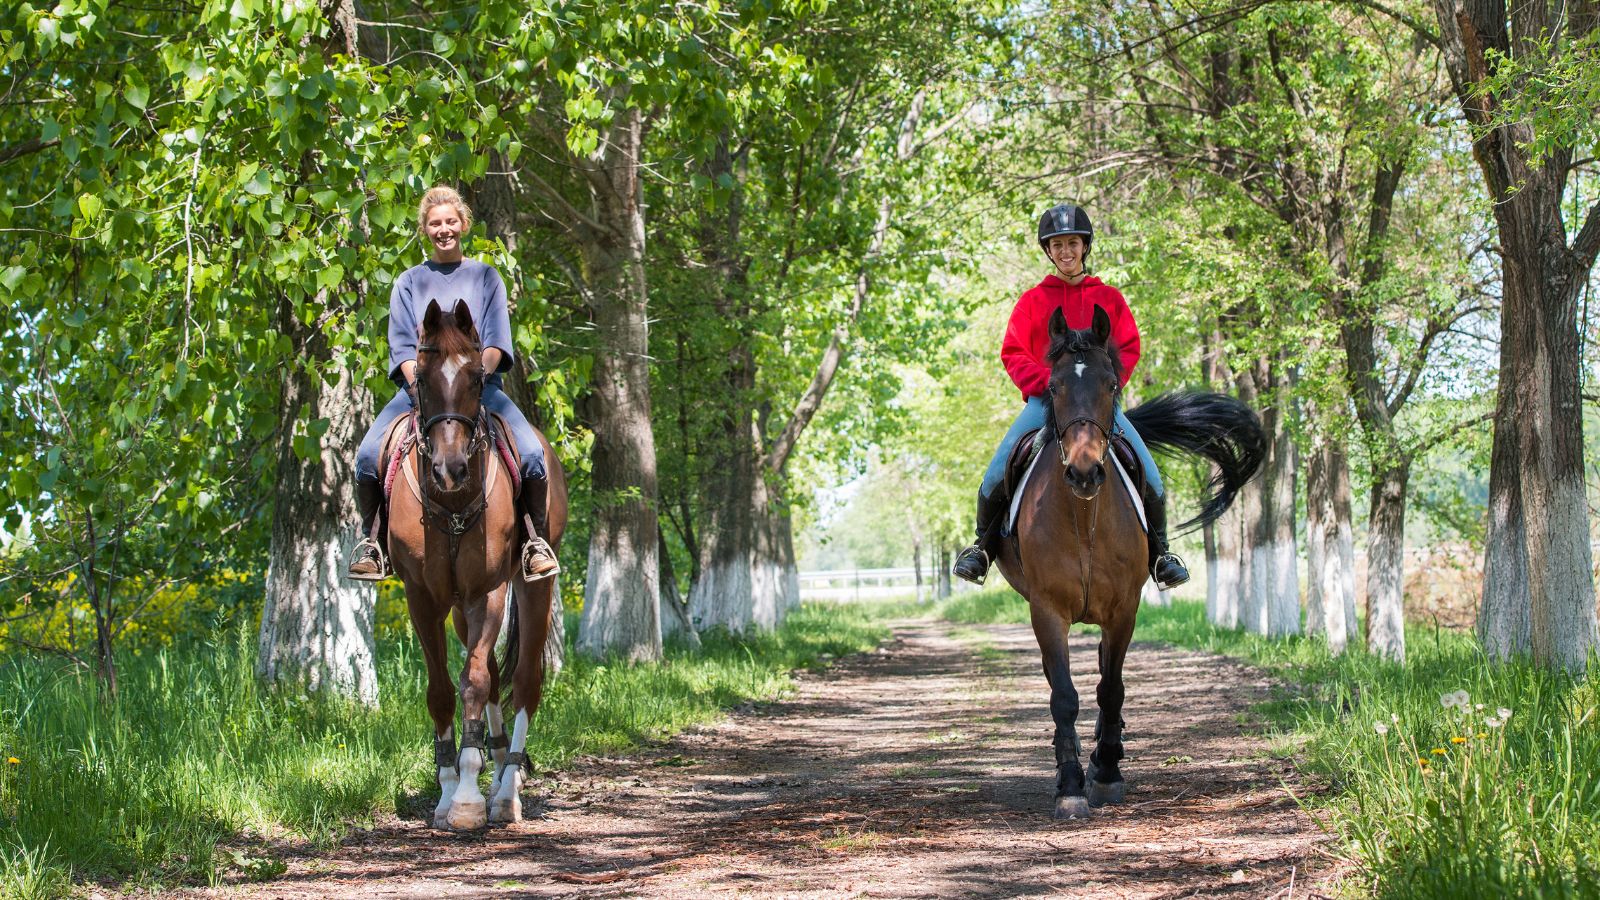 馬メディアレクシア | 大人女性におすすめしたいレディース乗馬ブランドまとめ【2022最新】